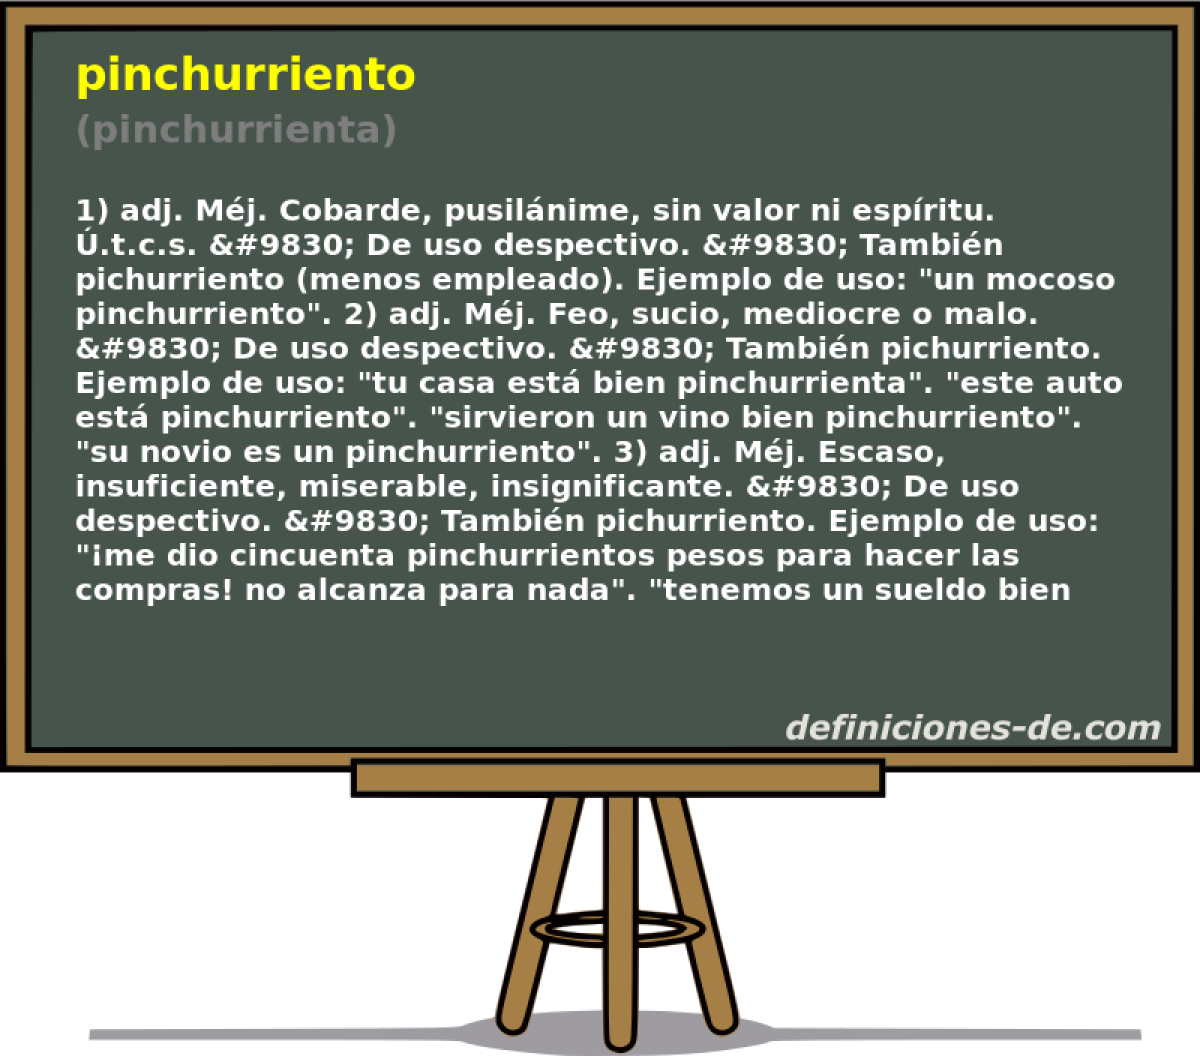 pinchurriento (pinchurrienta)